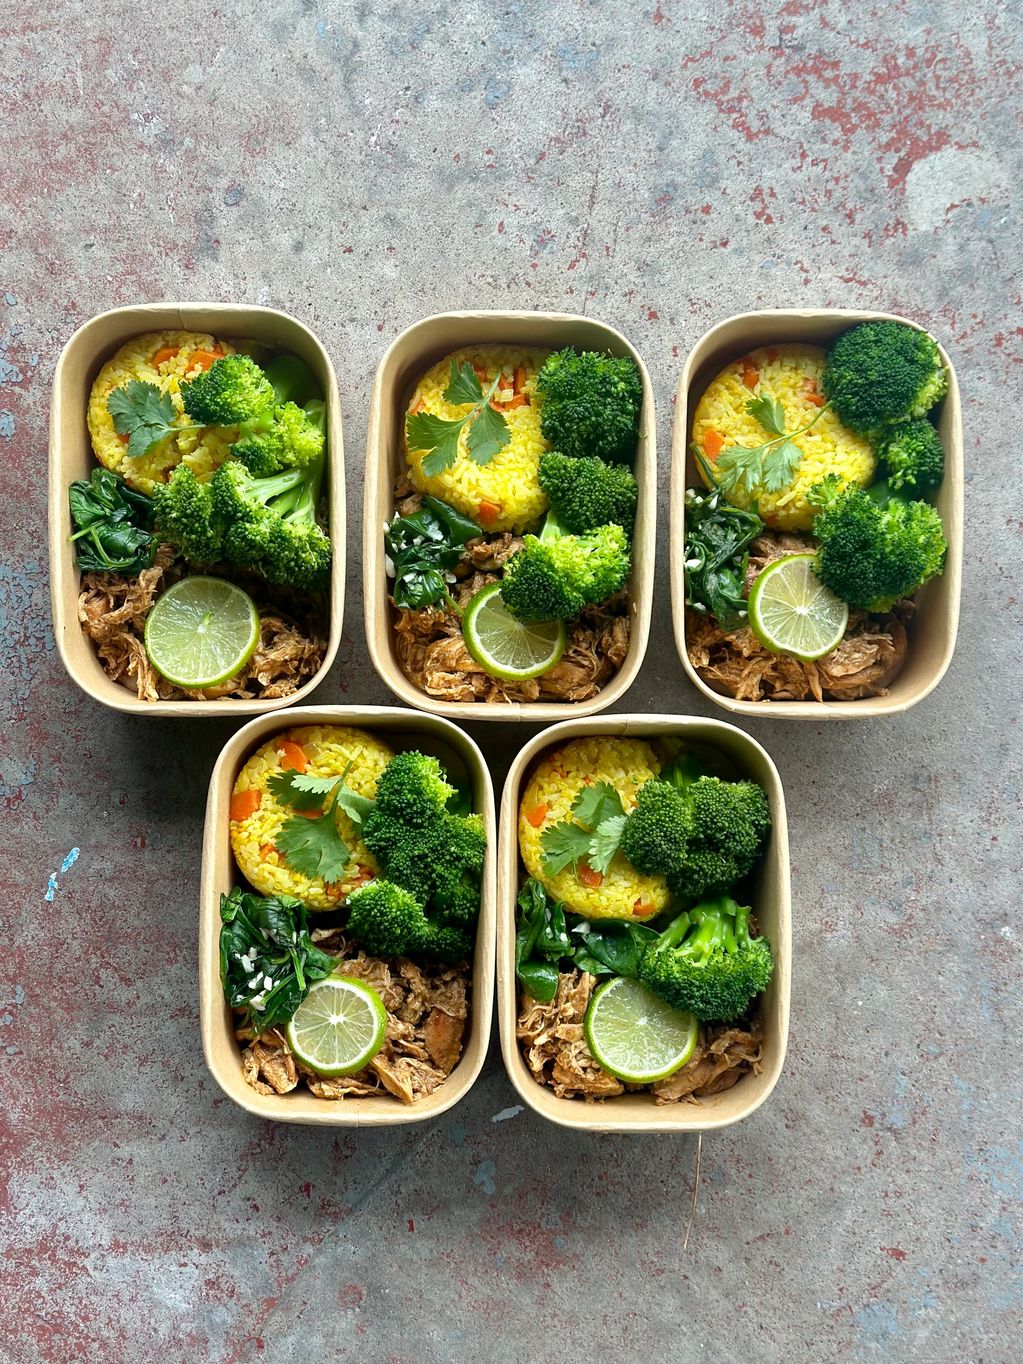 Shredded chicken kale broccoli rice in box meal prep 